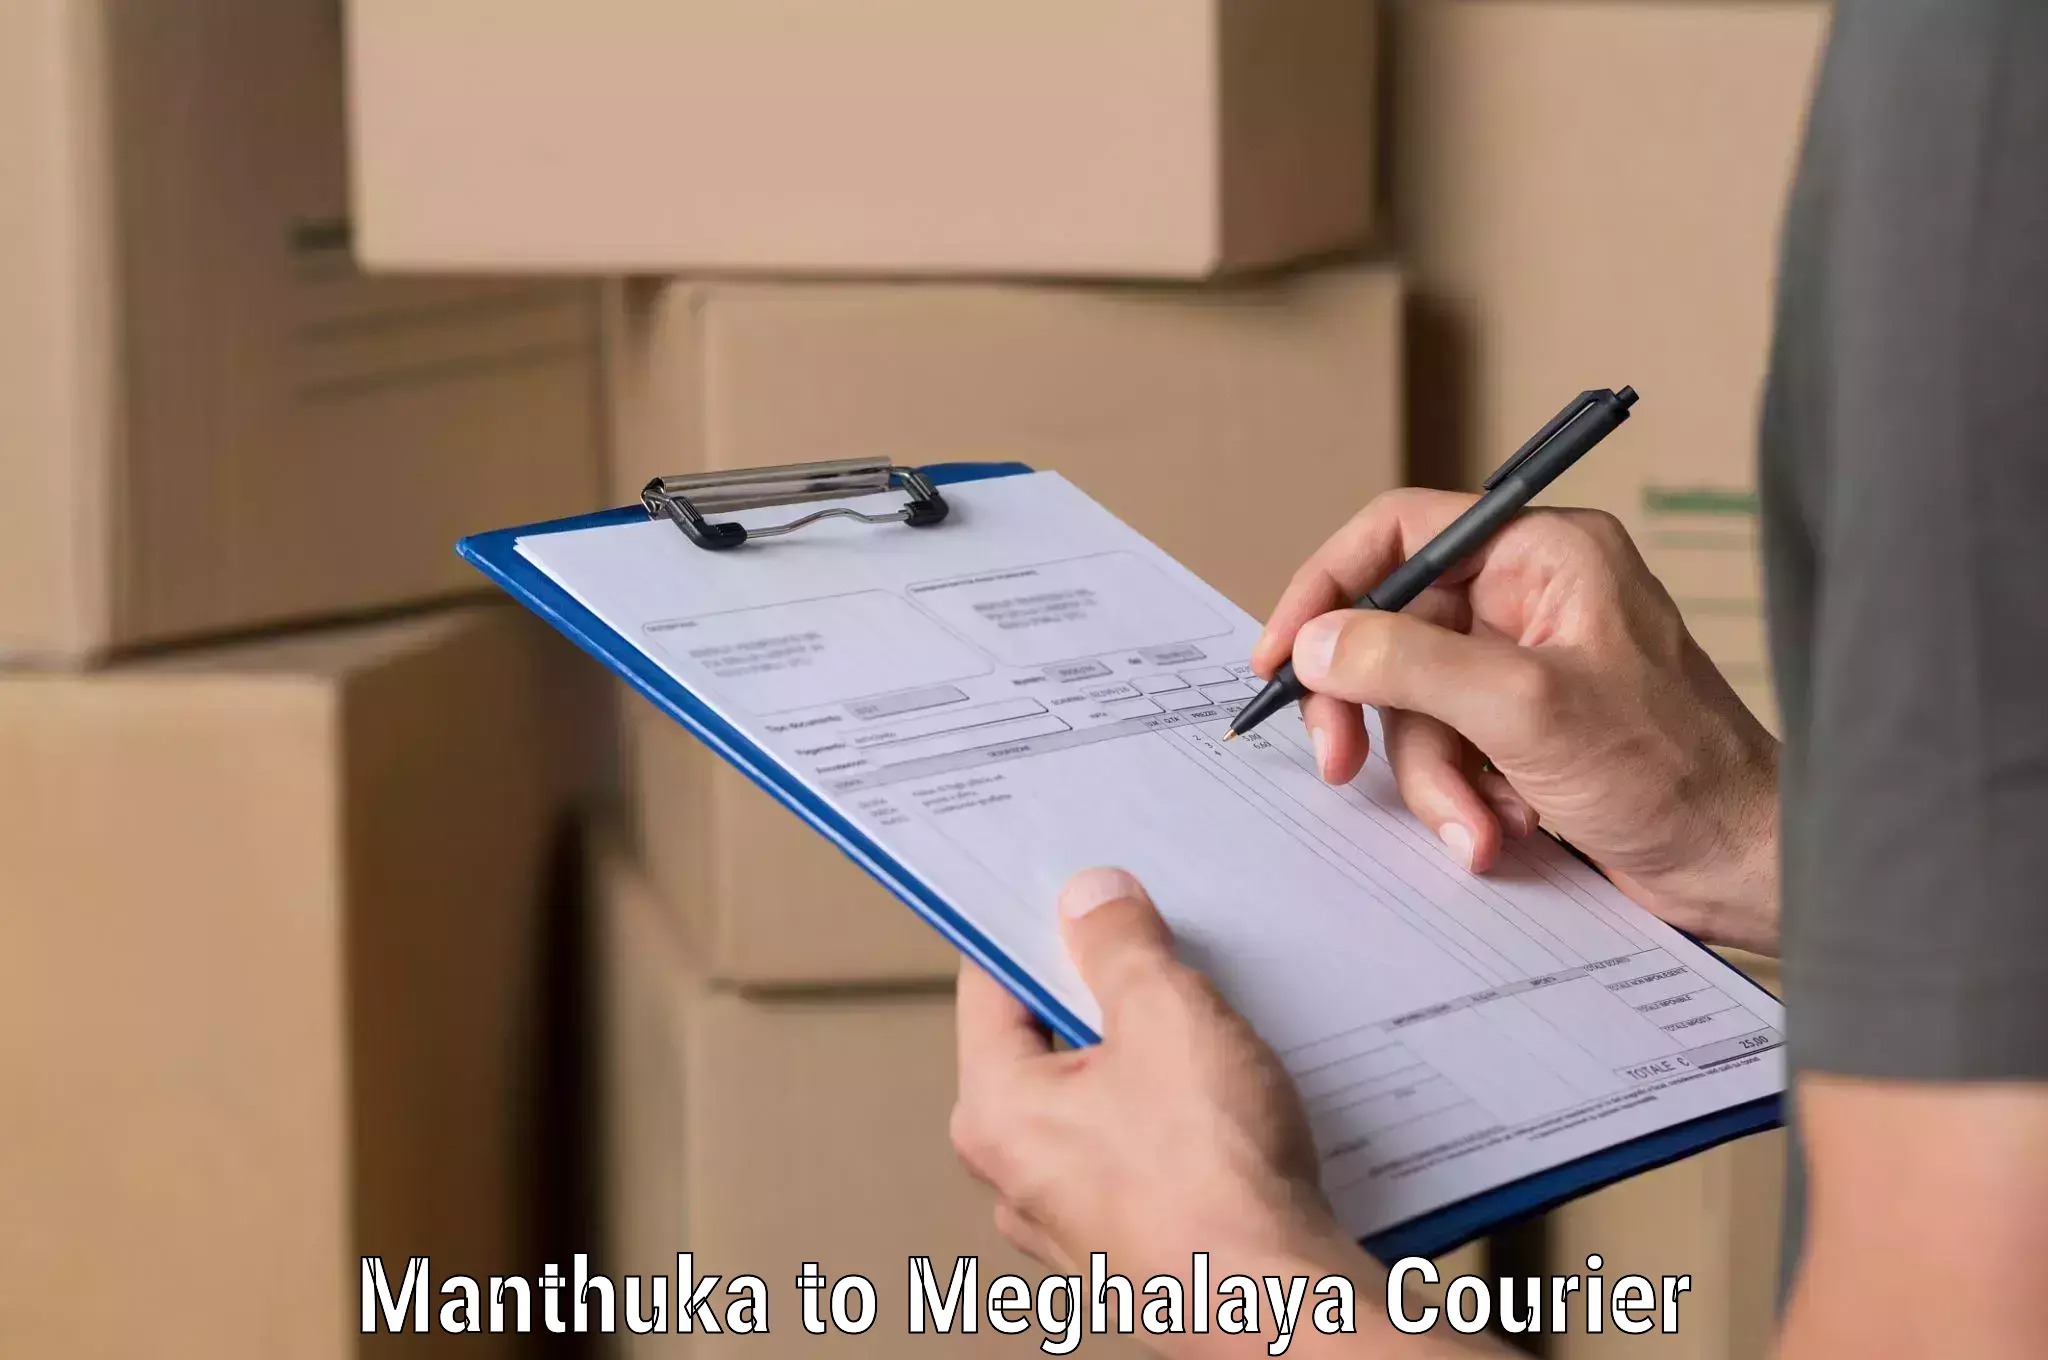 Package tracking in Manthuka to Meghalaya